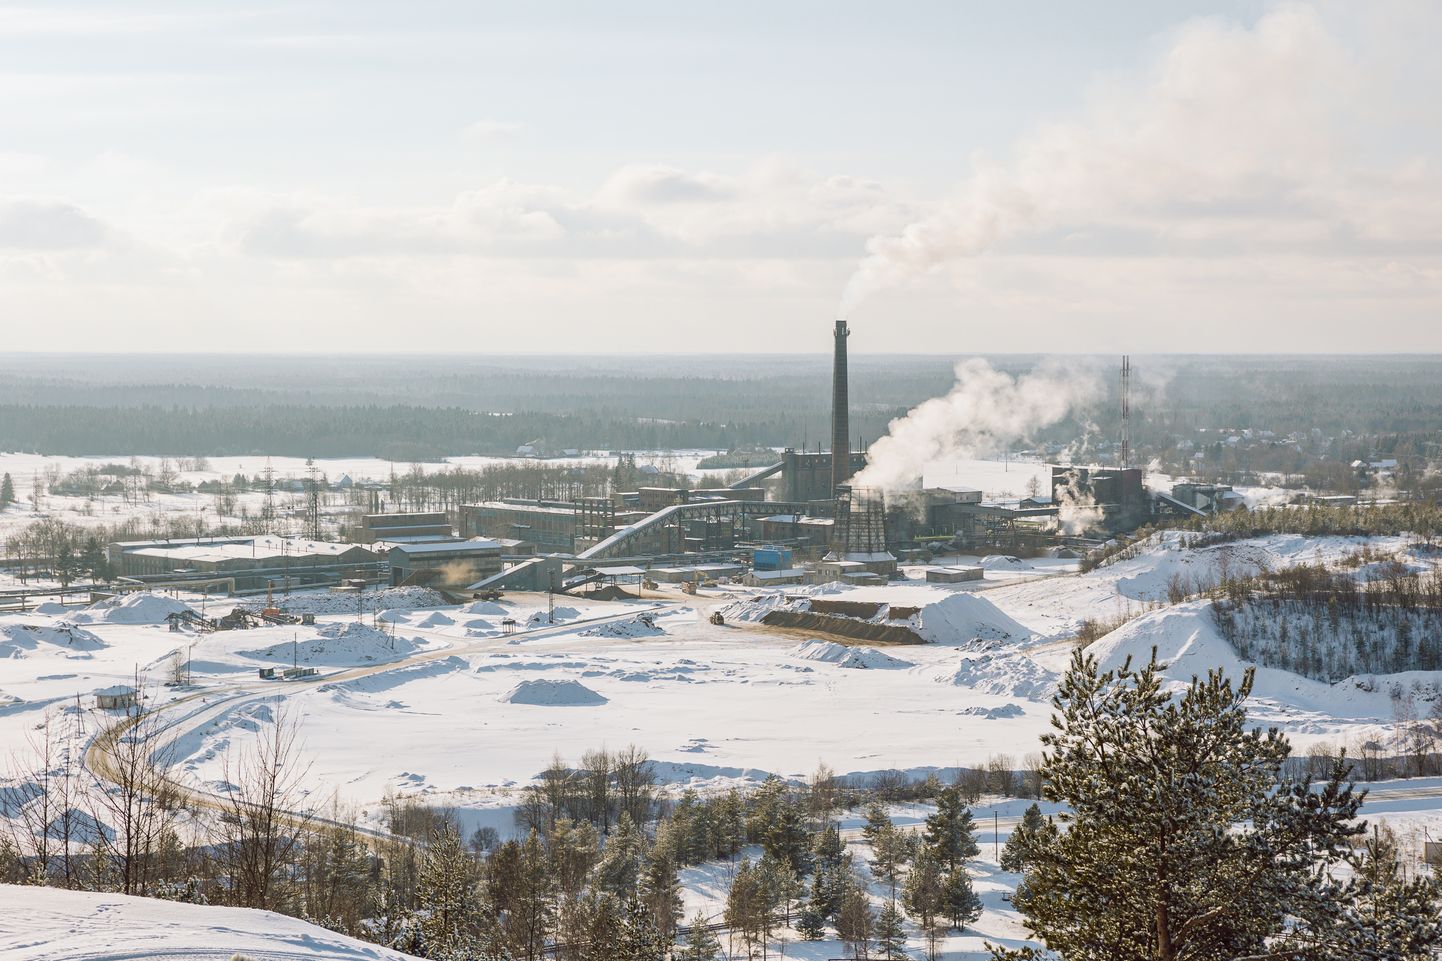 Praegu tuleb Kiviõli linna soojusenergia Kiviõli Keemiatööstusest, kes võib aga lähiaastatel tegevuse lõpetada.